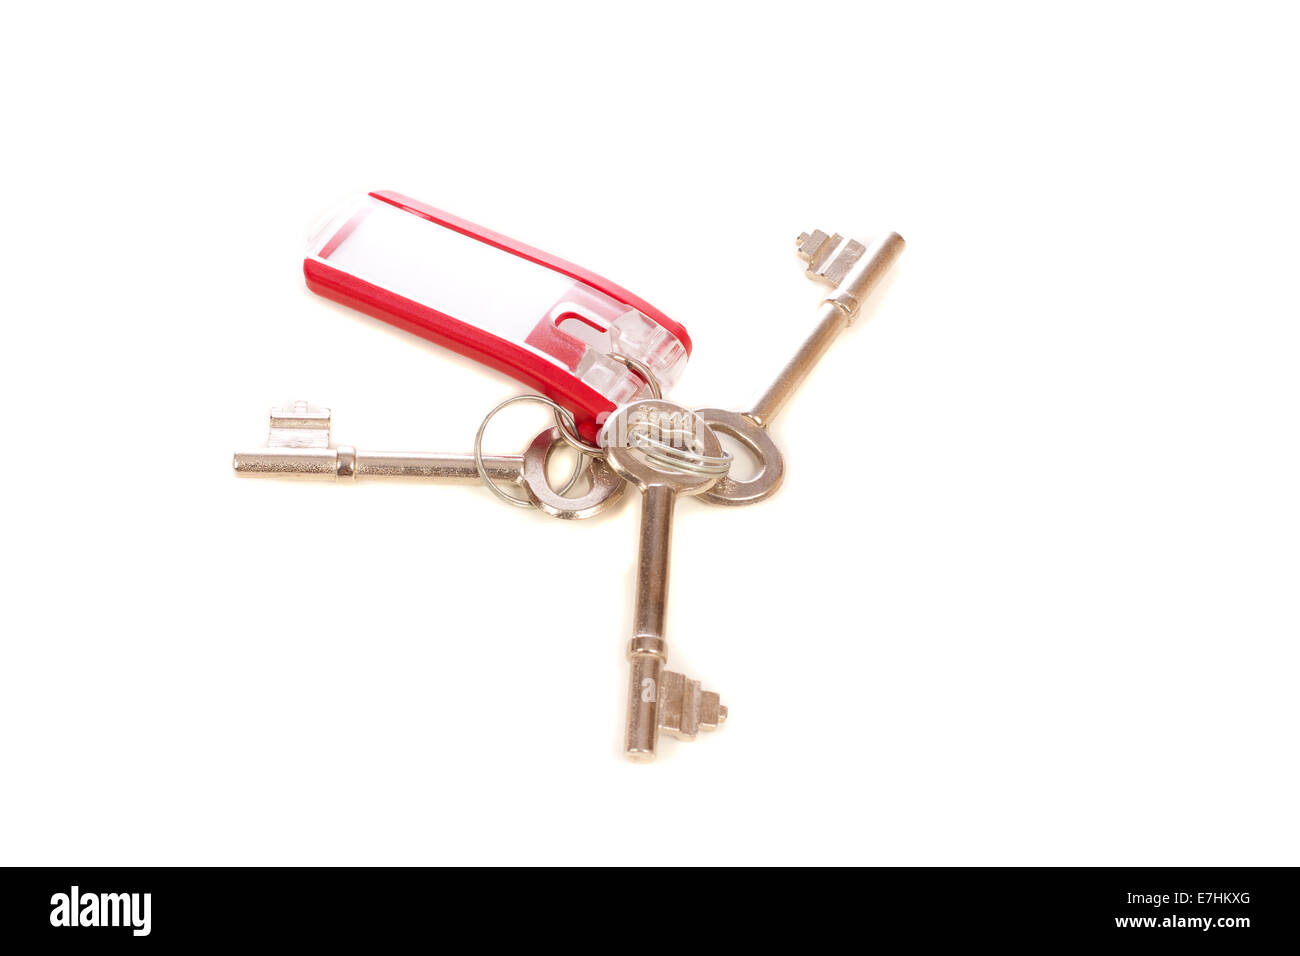 Le chiavi di casa con tag per mettere l'etichetta isolate su sfondo bianco Foto Stock